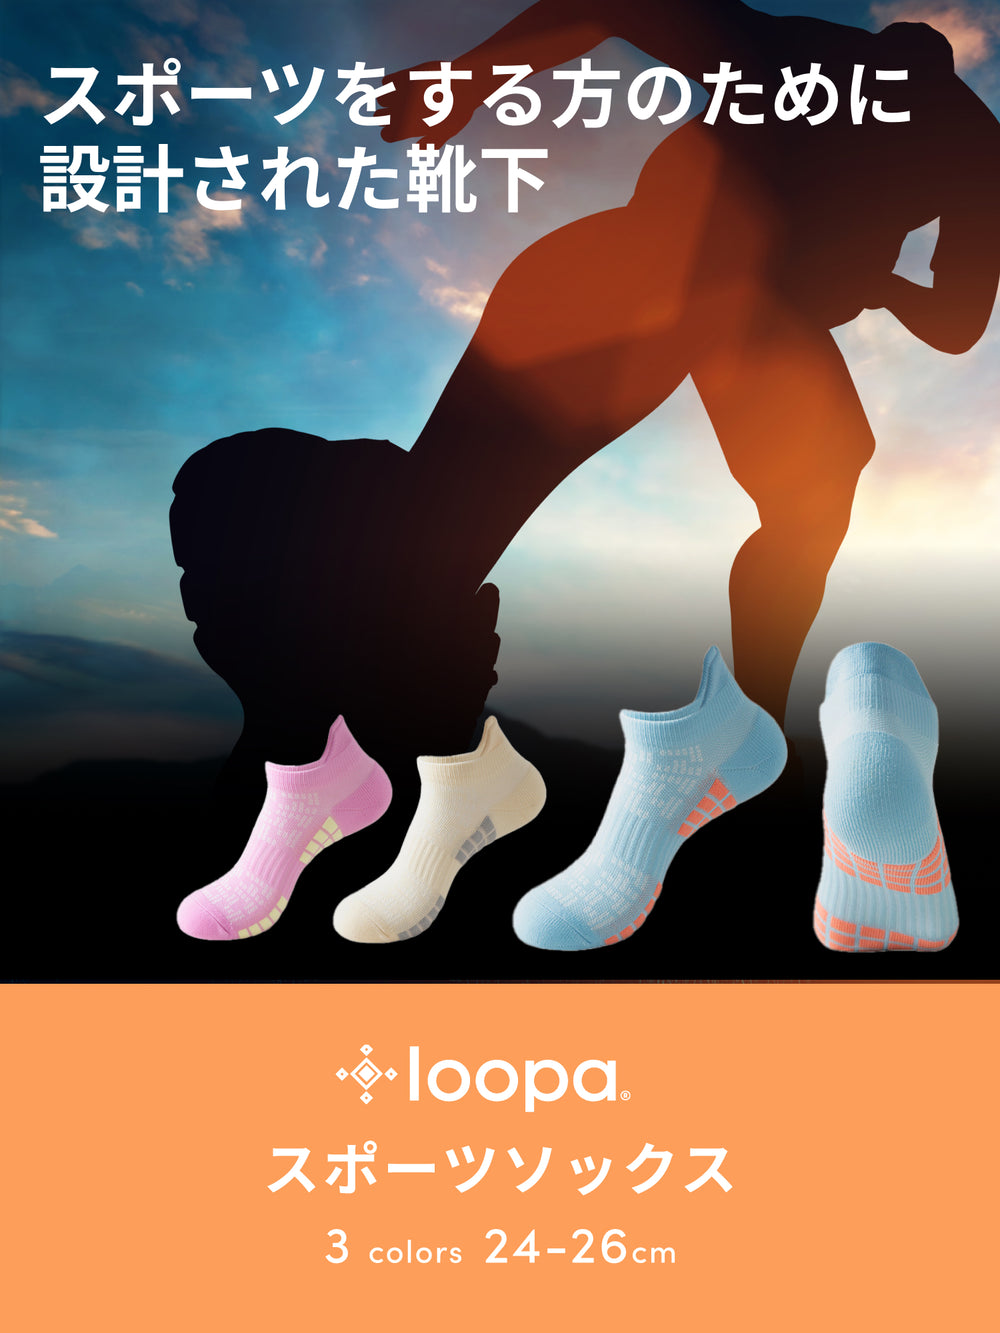 [Loopa] スポーツソックス / ルーパ レディース 靴下 ヨガ スポーツ ランニング 滑り止め付き